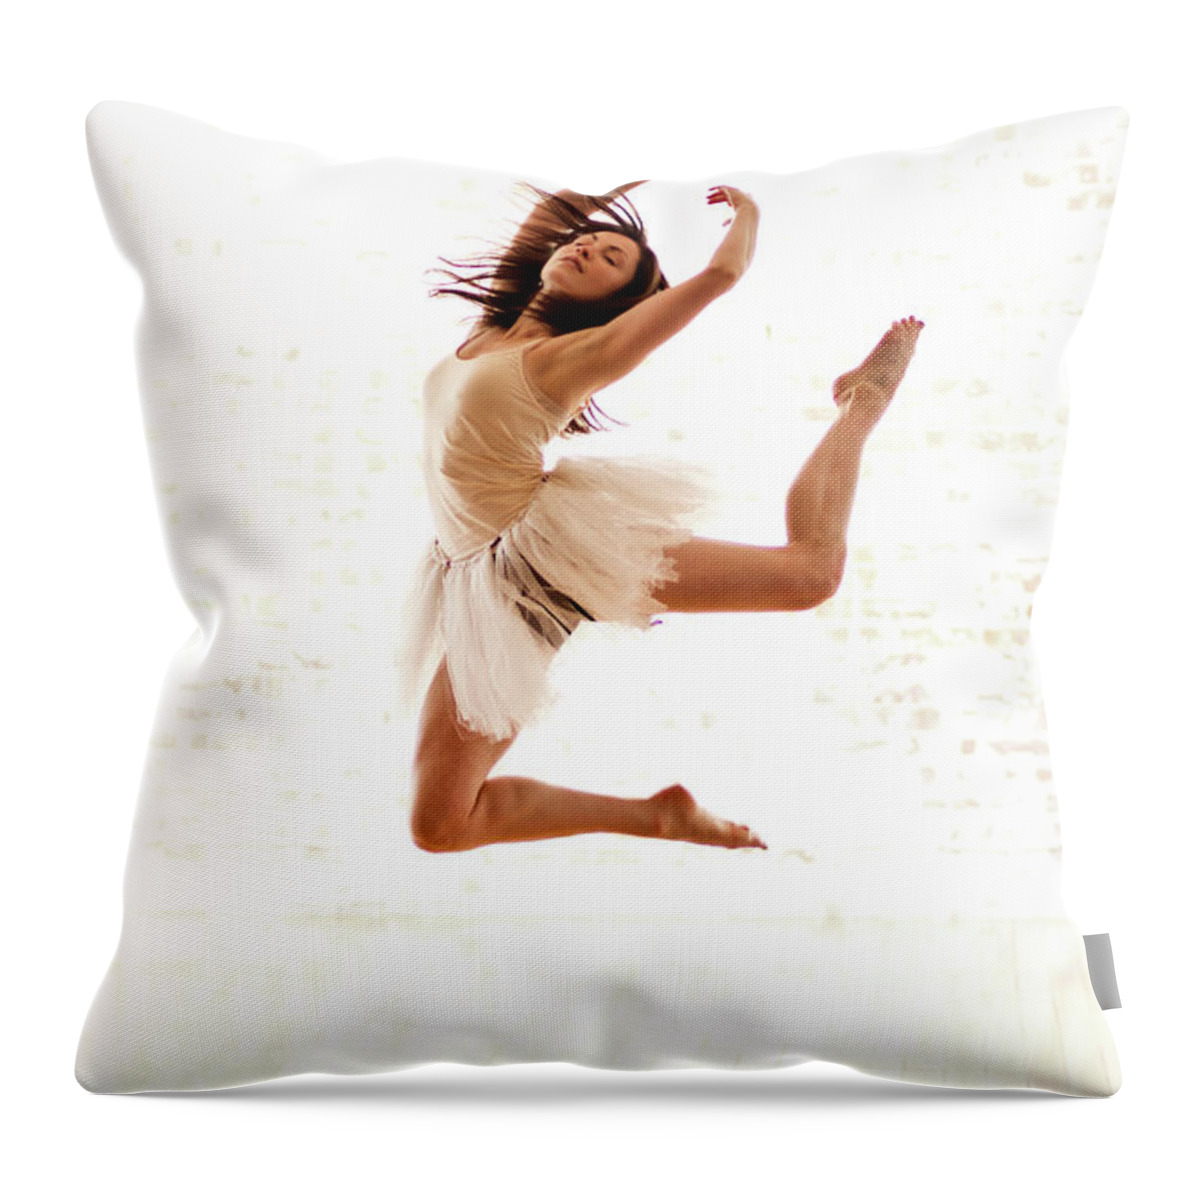 Ballet Dancer Throw Pillow featuring the photograph Ballet Dancer #1 by Phil Payne Photography